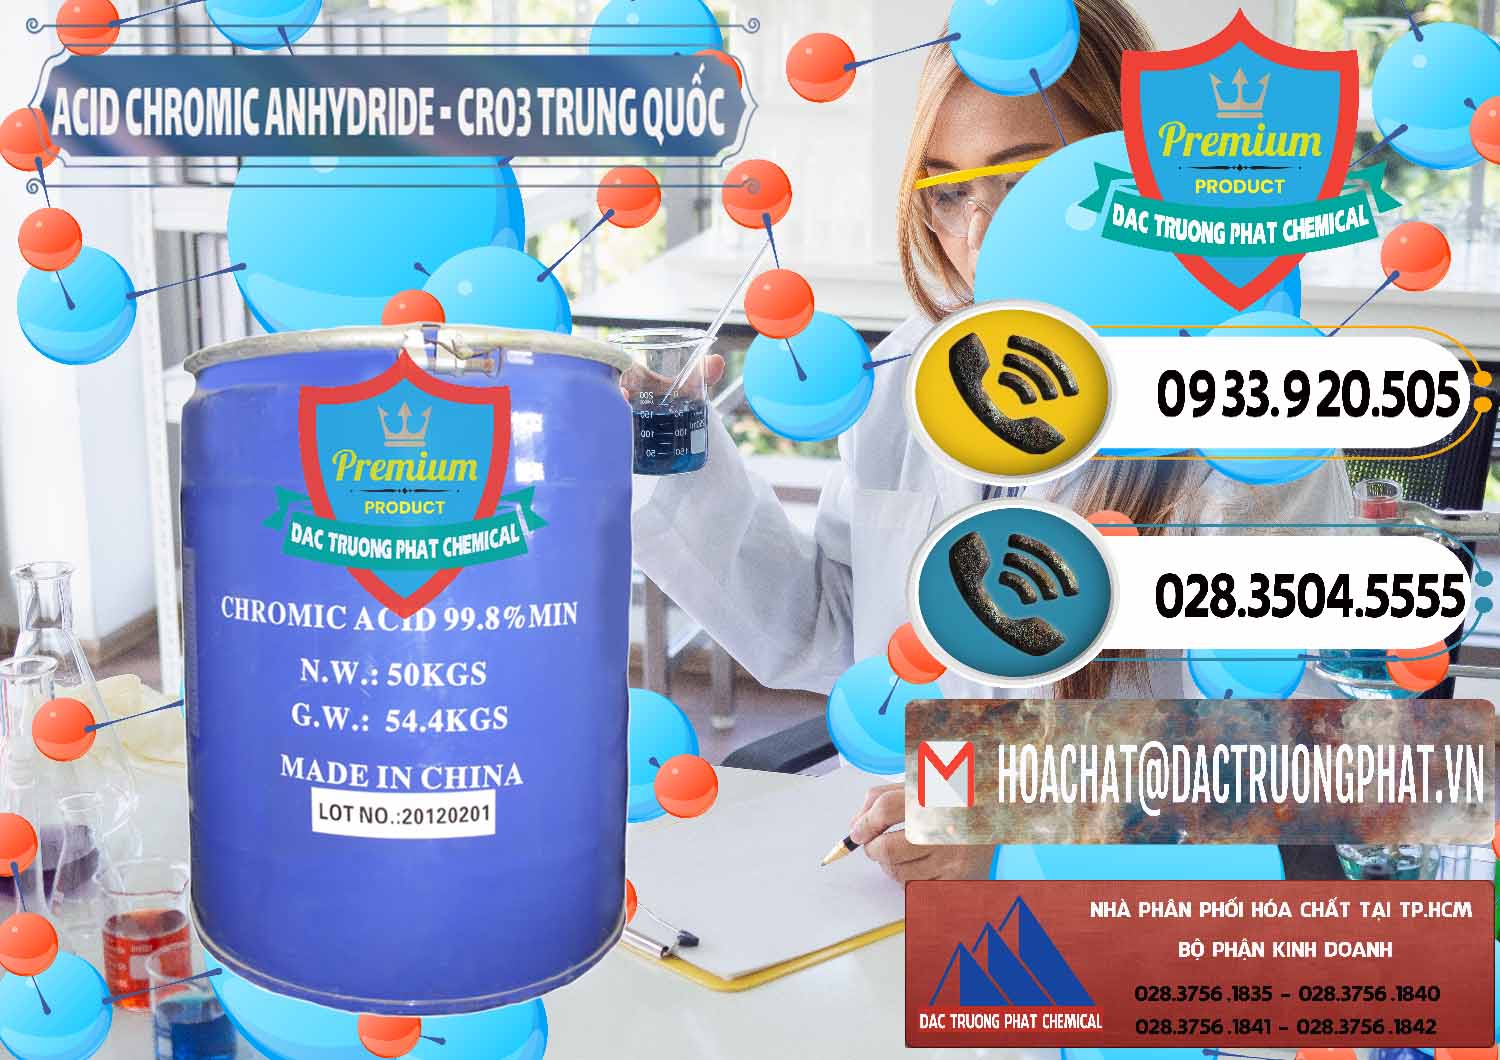 Nhà cung cấp - bán Acid Chromic Anhydride - Cromic CRO3 Trung Quốc China - 0007 - Chuyên kinh doanh ( cung cấp ) hóa chất tại TP.HCM - hoachatdetnhuom.vn